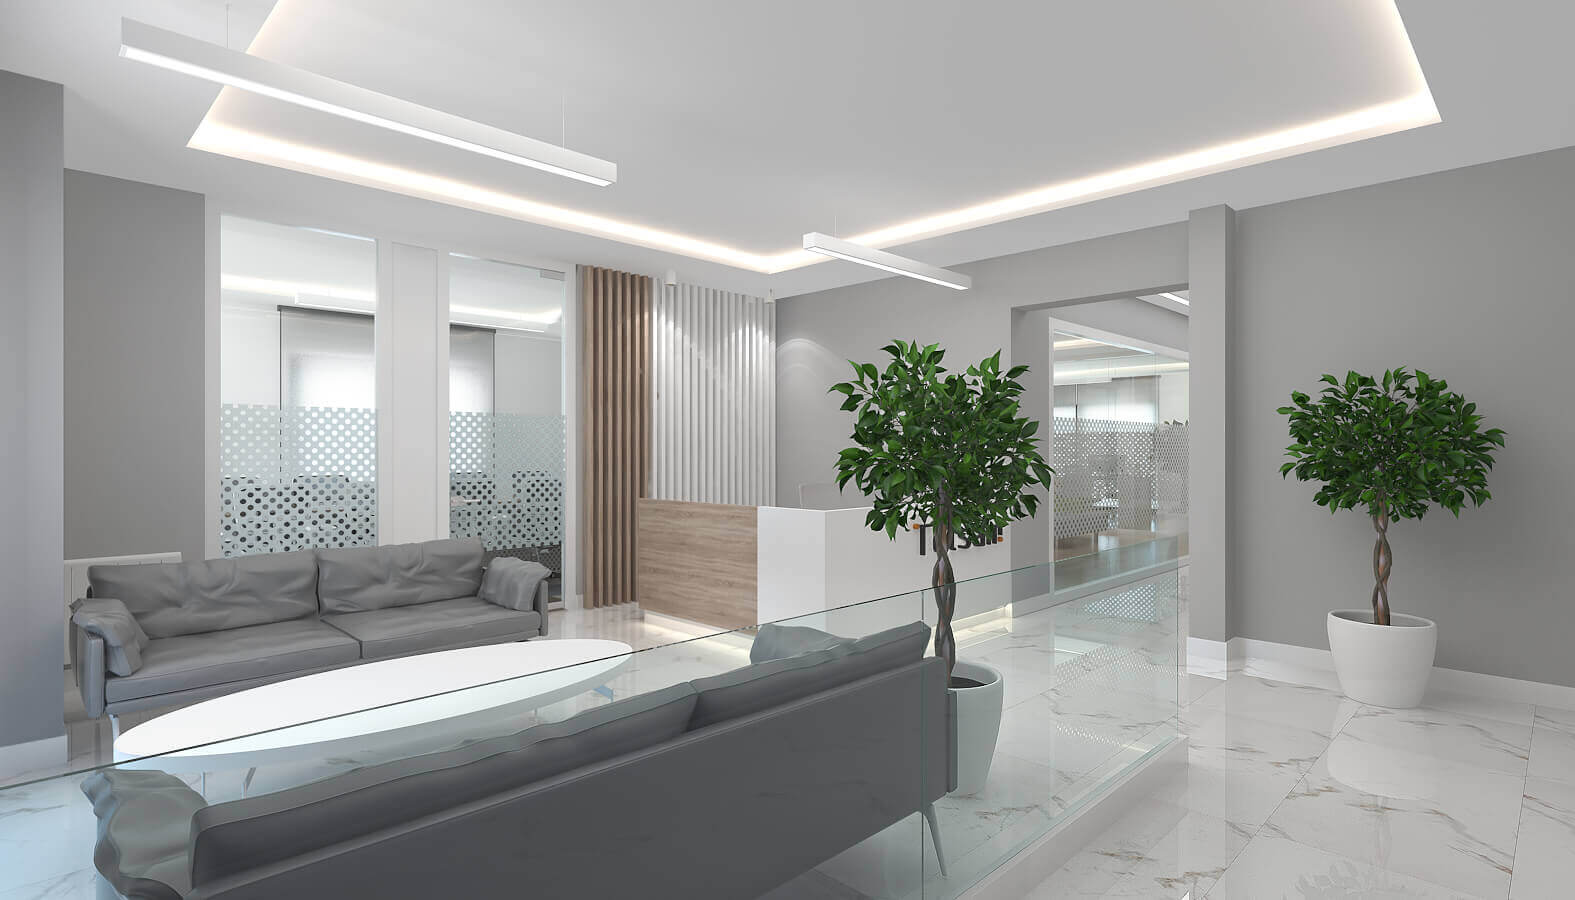 Ankara office design